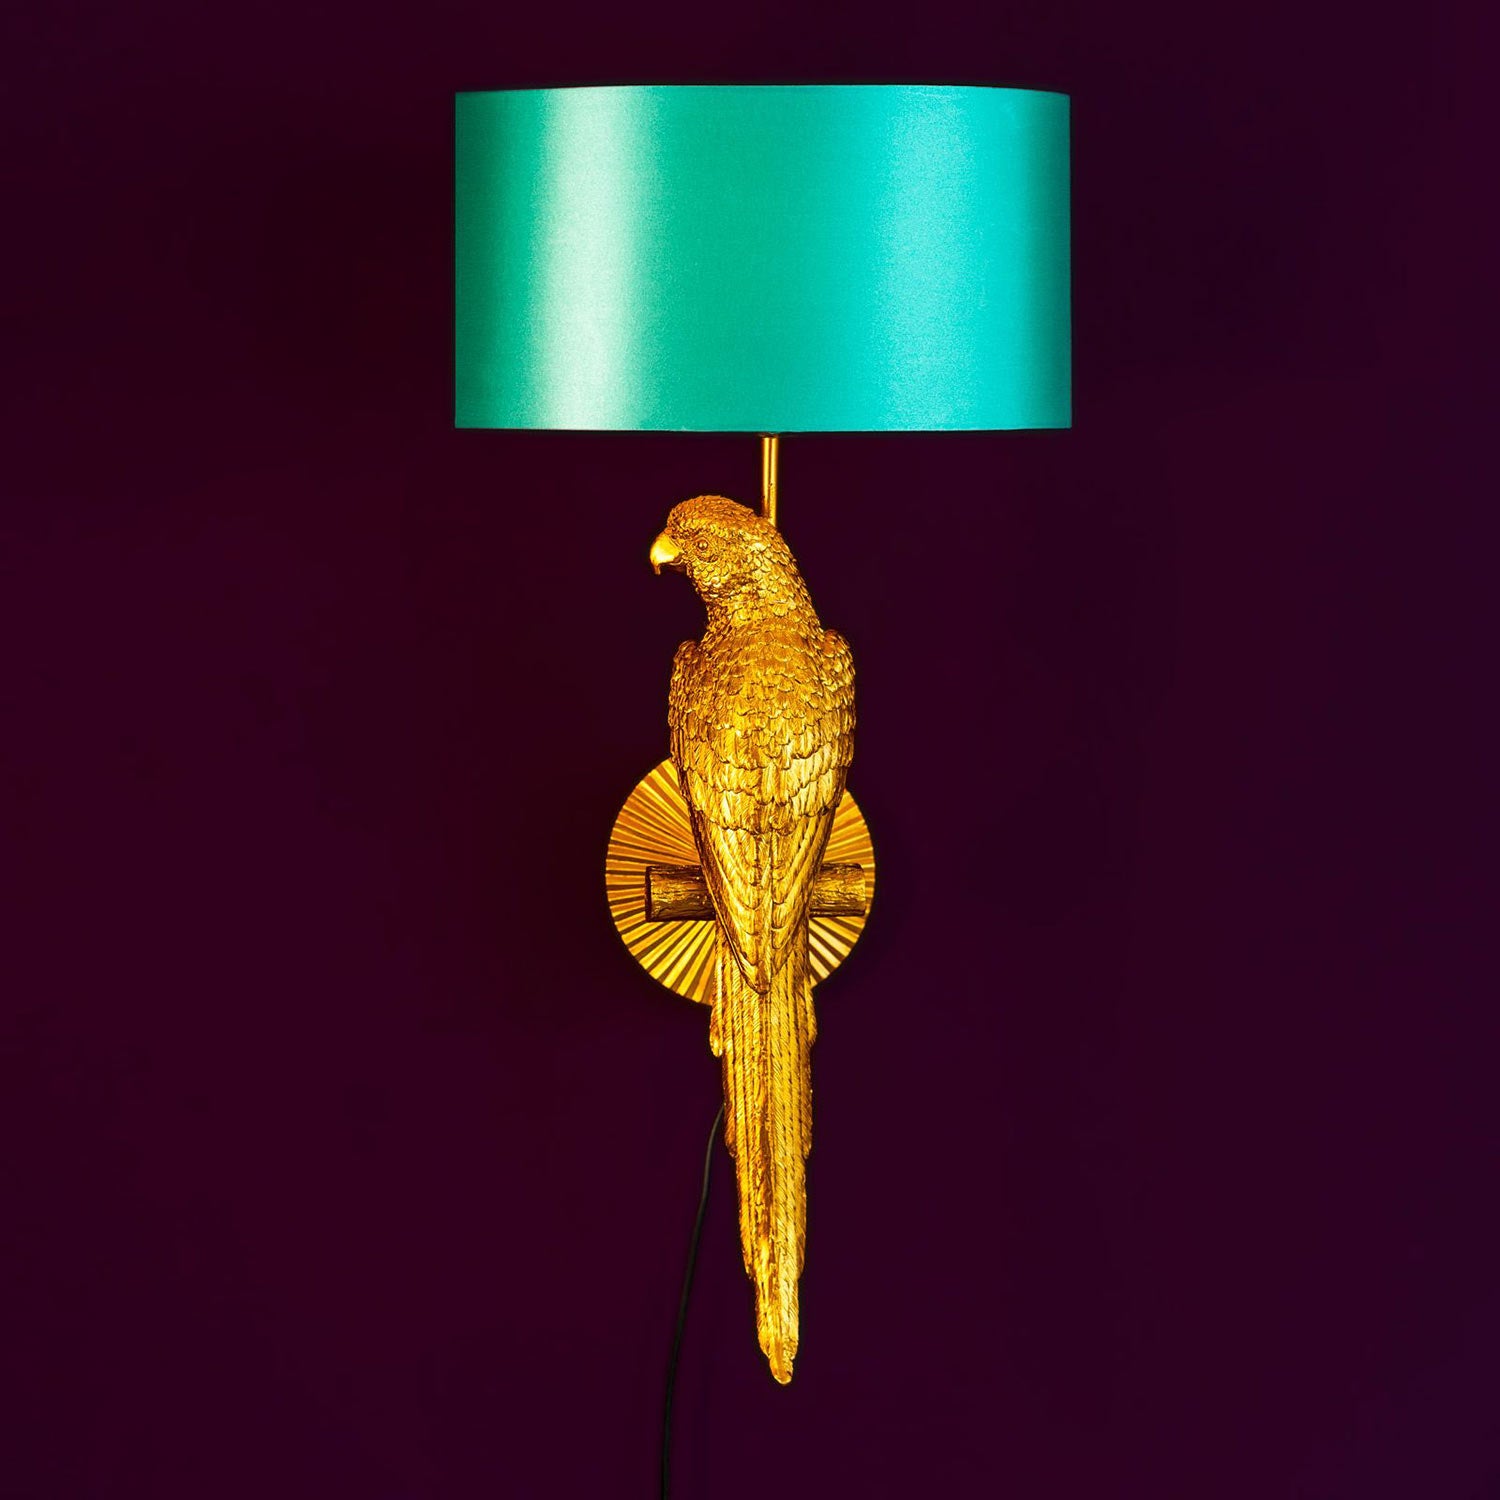 Aranyszínű papagáj figurával díszített, trópusi, glamour stílusú falilámpa, türkizszínű lámpaernyővel., lila háttér előtt.